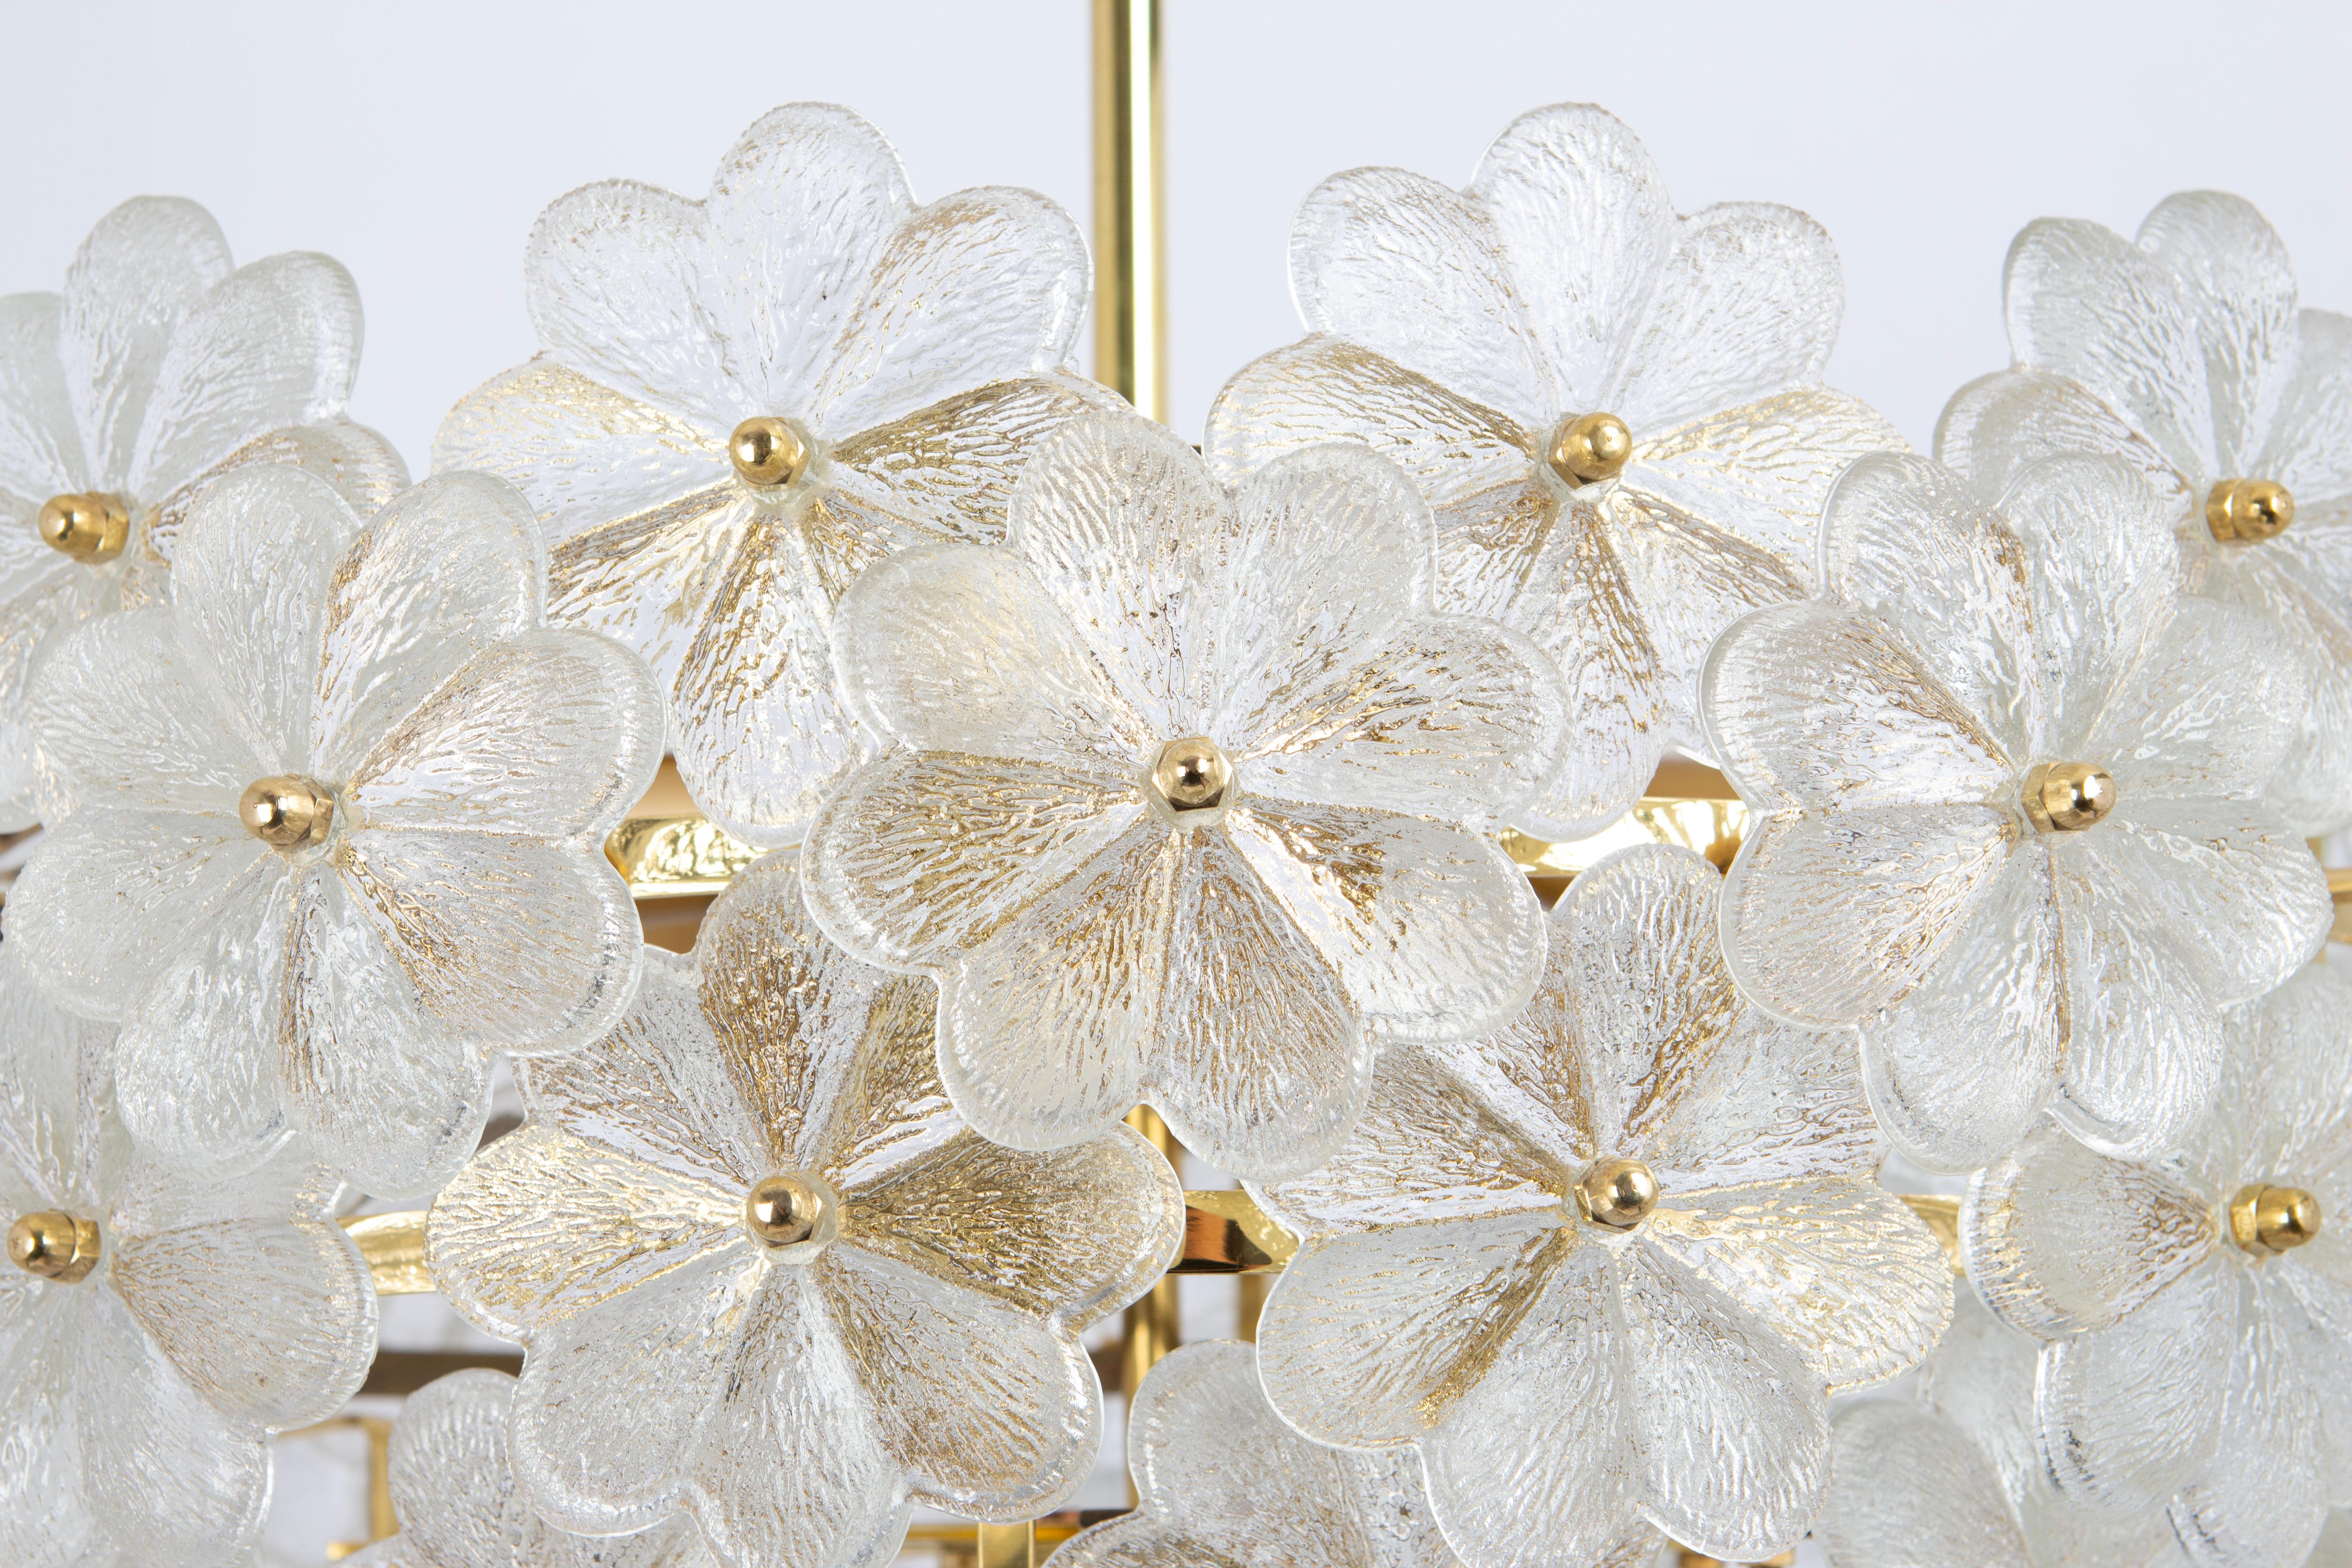 Grand lustre magnifique avec de nombreuses fleurs en cristal de Murano sur une monture en laiton, fabriqué par Ernst Palme en Allemagne, années 1970.
De haute qualité et en très bon état. Nettoyé, bien câblé et prêt à être utilisé. 

Le lustre